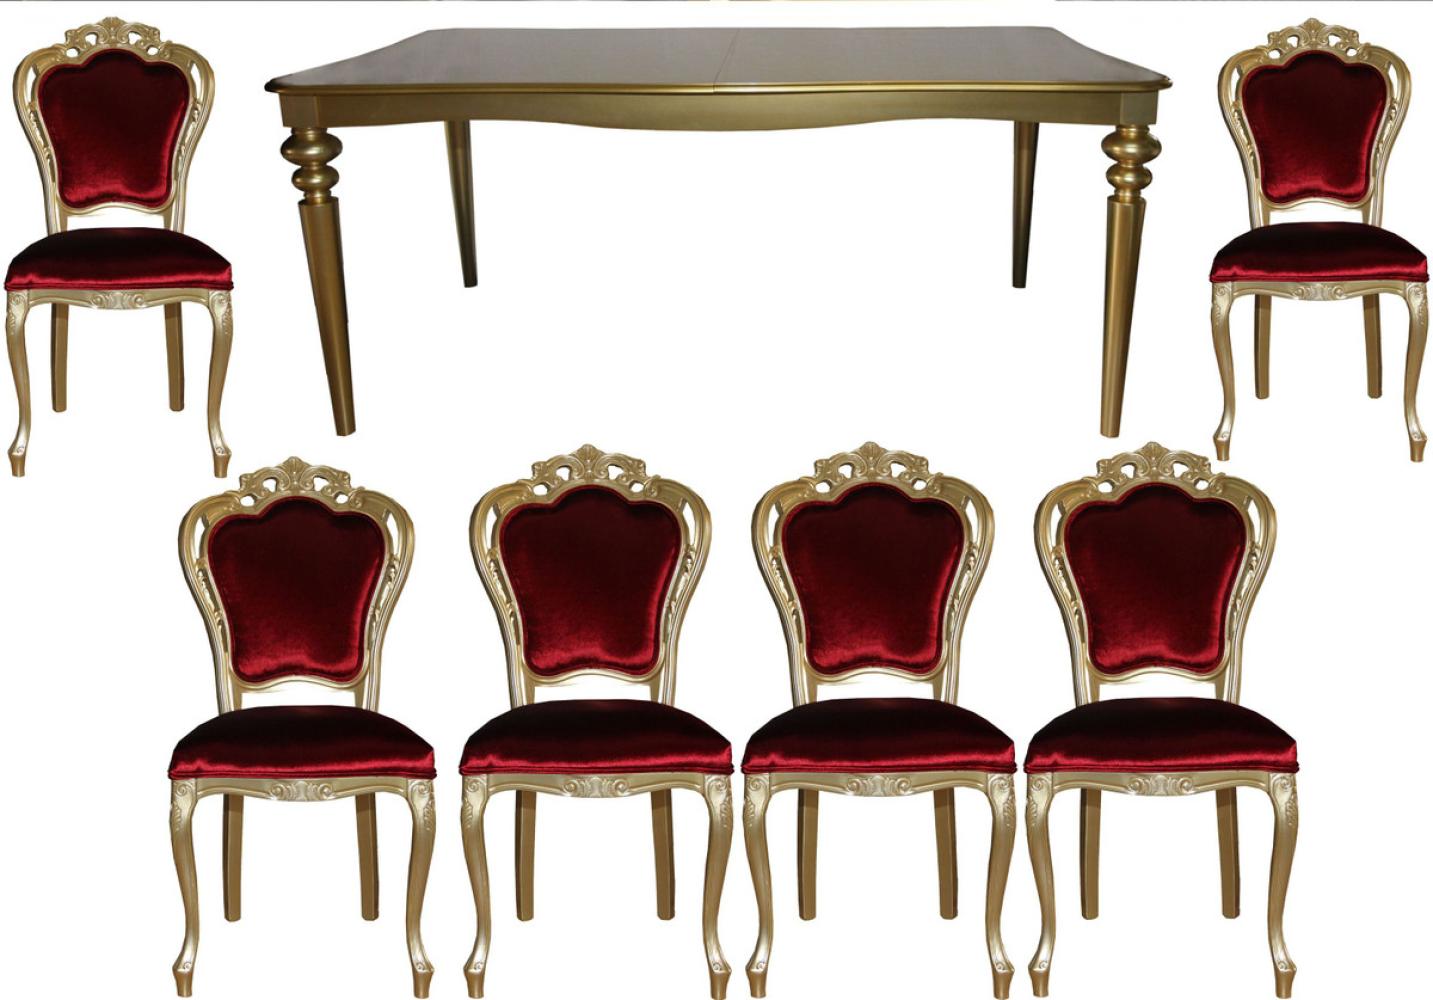 Casa Padrino Barock Luxus Esszimmer Set Bordeaux/Gold - Esstisch + 6 Stühle - Möbel Antik Stil - Luxus Qualität - Limited Edition Bild 1